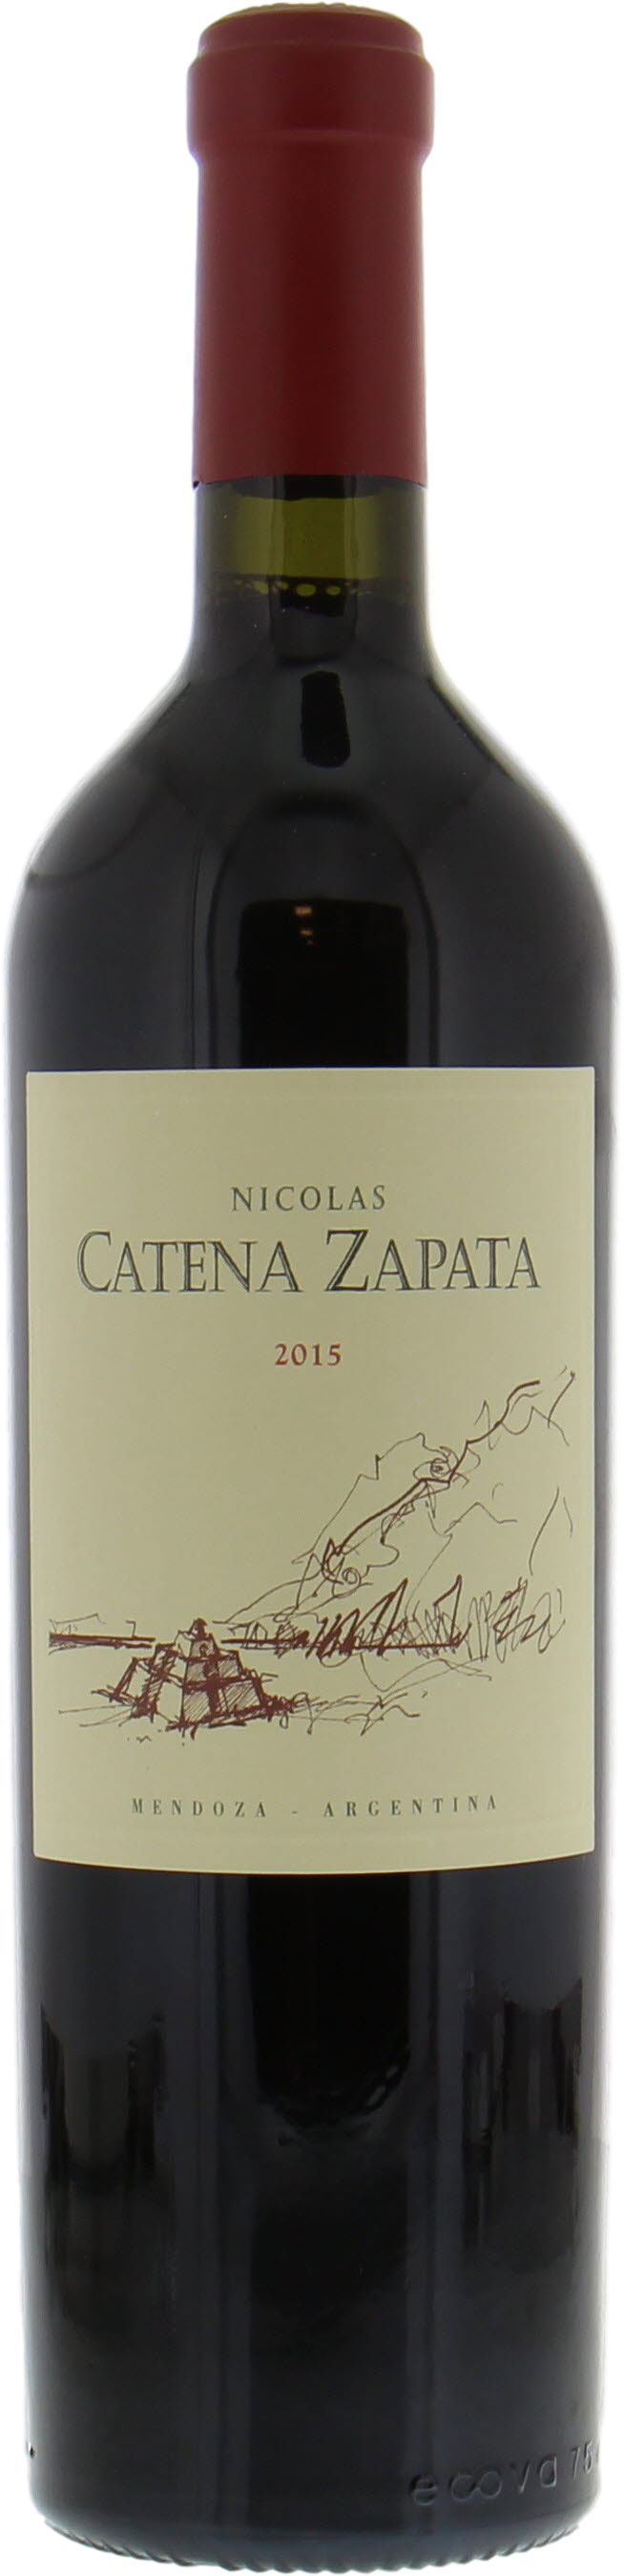 Catena Zapata - Nicolas Catena 2015